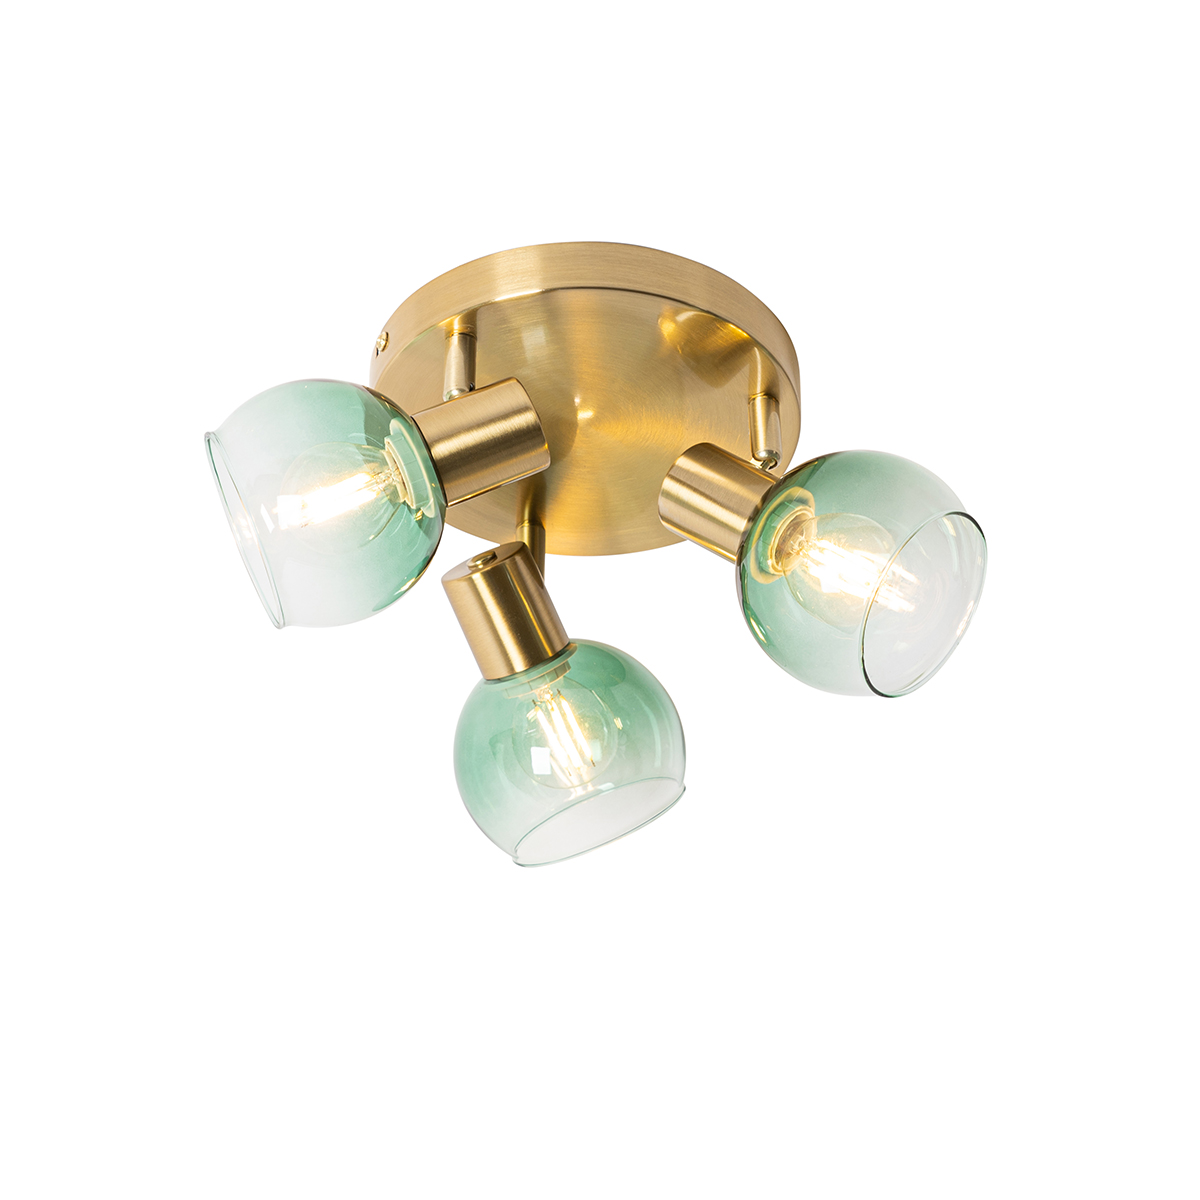 E-shop Art Deco stropné svietidlo zlaté so zeleným sklom 3 svetlá - Vidro